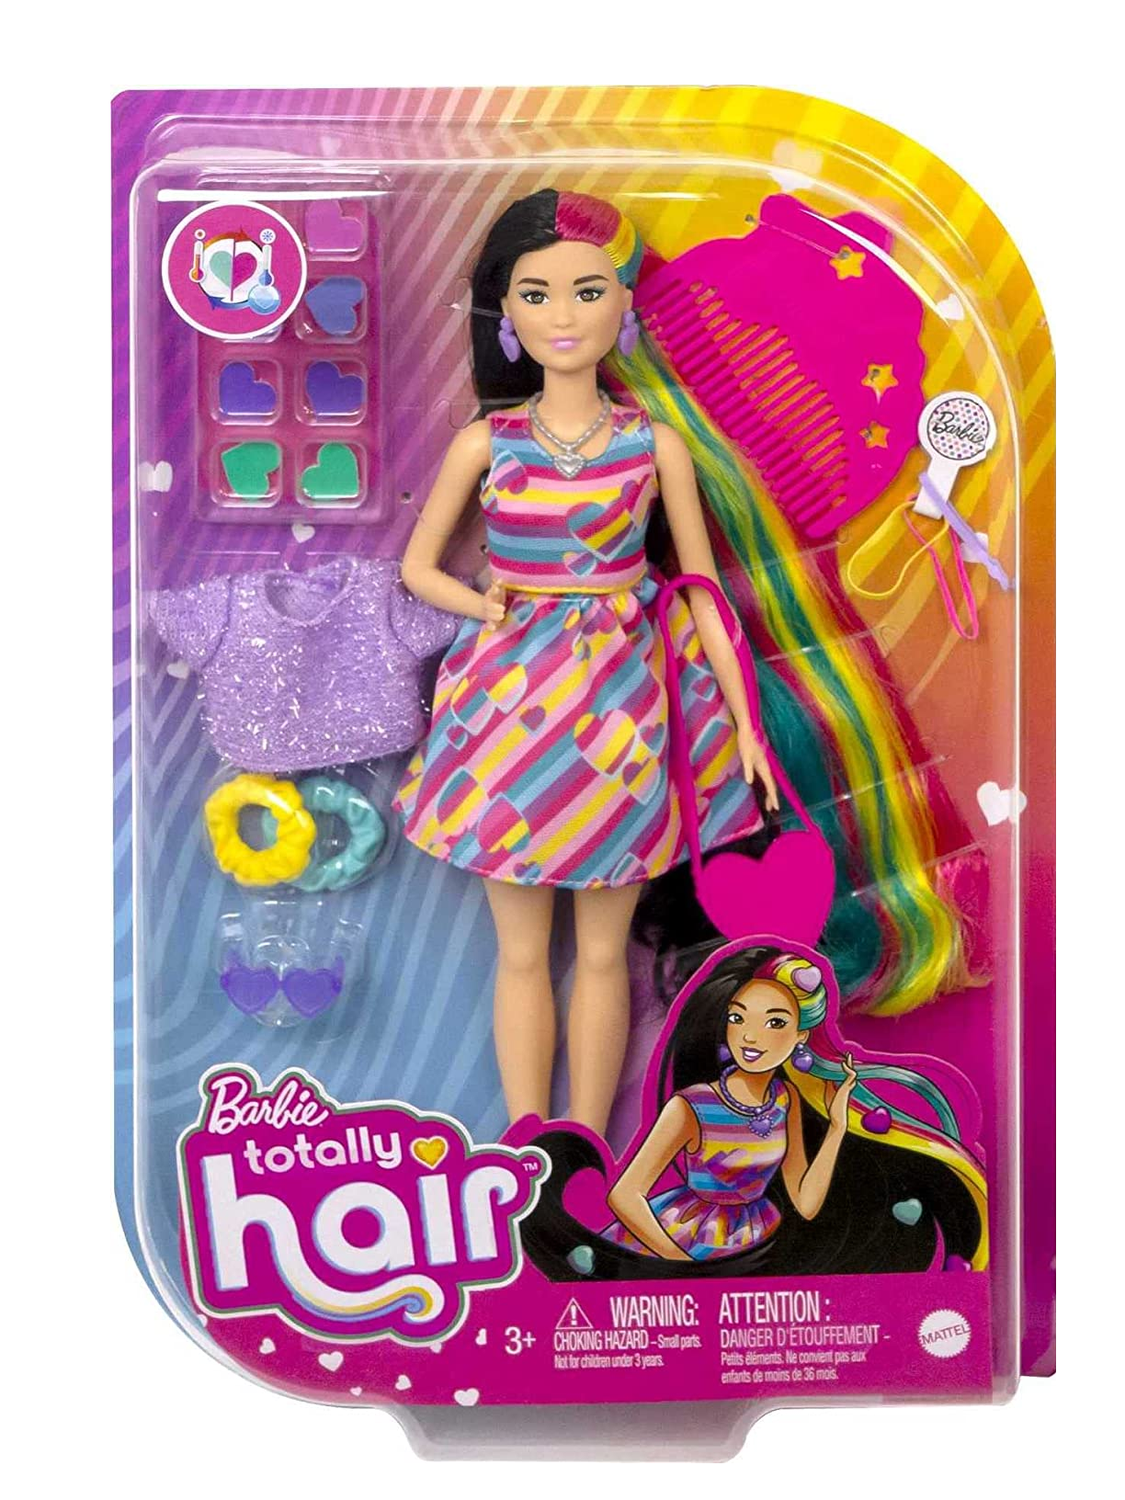 Roupa para boneca Barbie inspirada no filme Barbie the movie